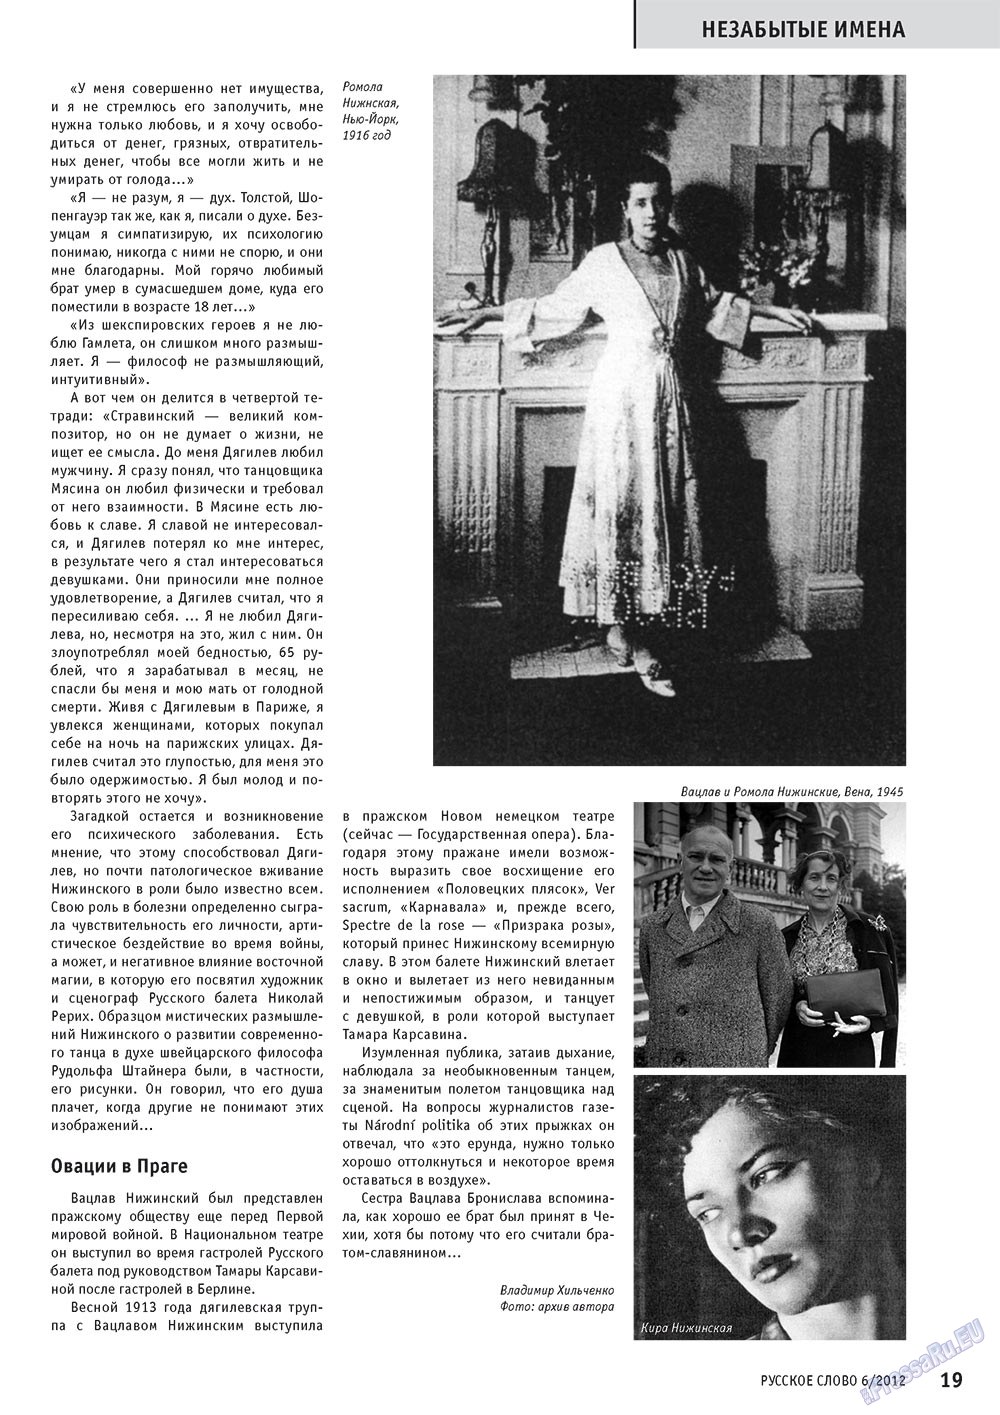 Русское слово, журнал. 2012 №6 стр.19